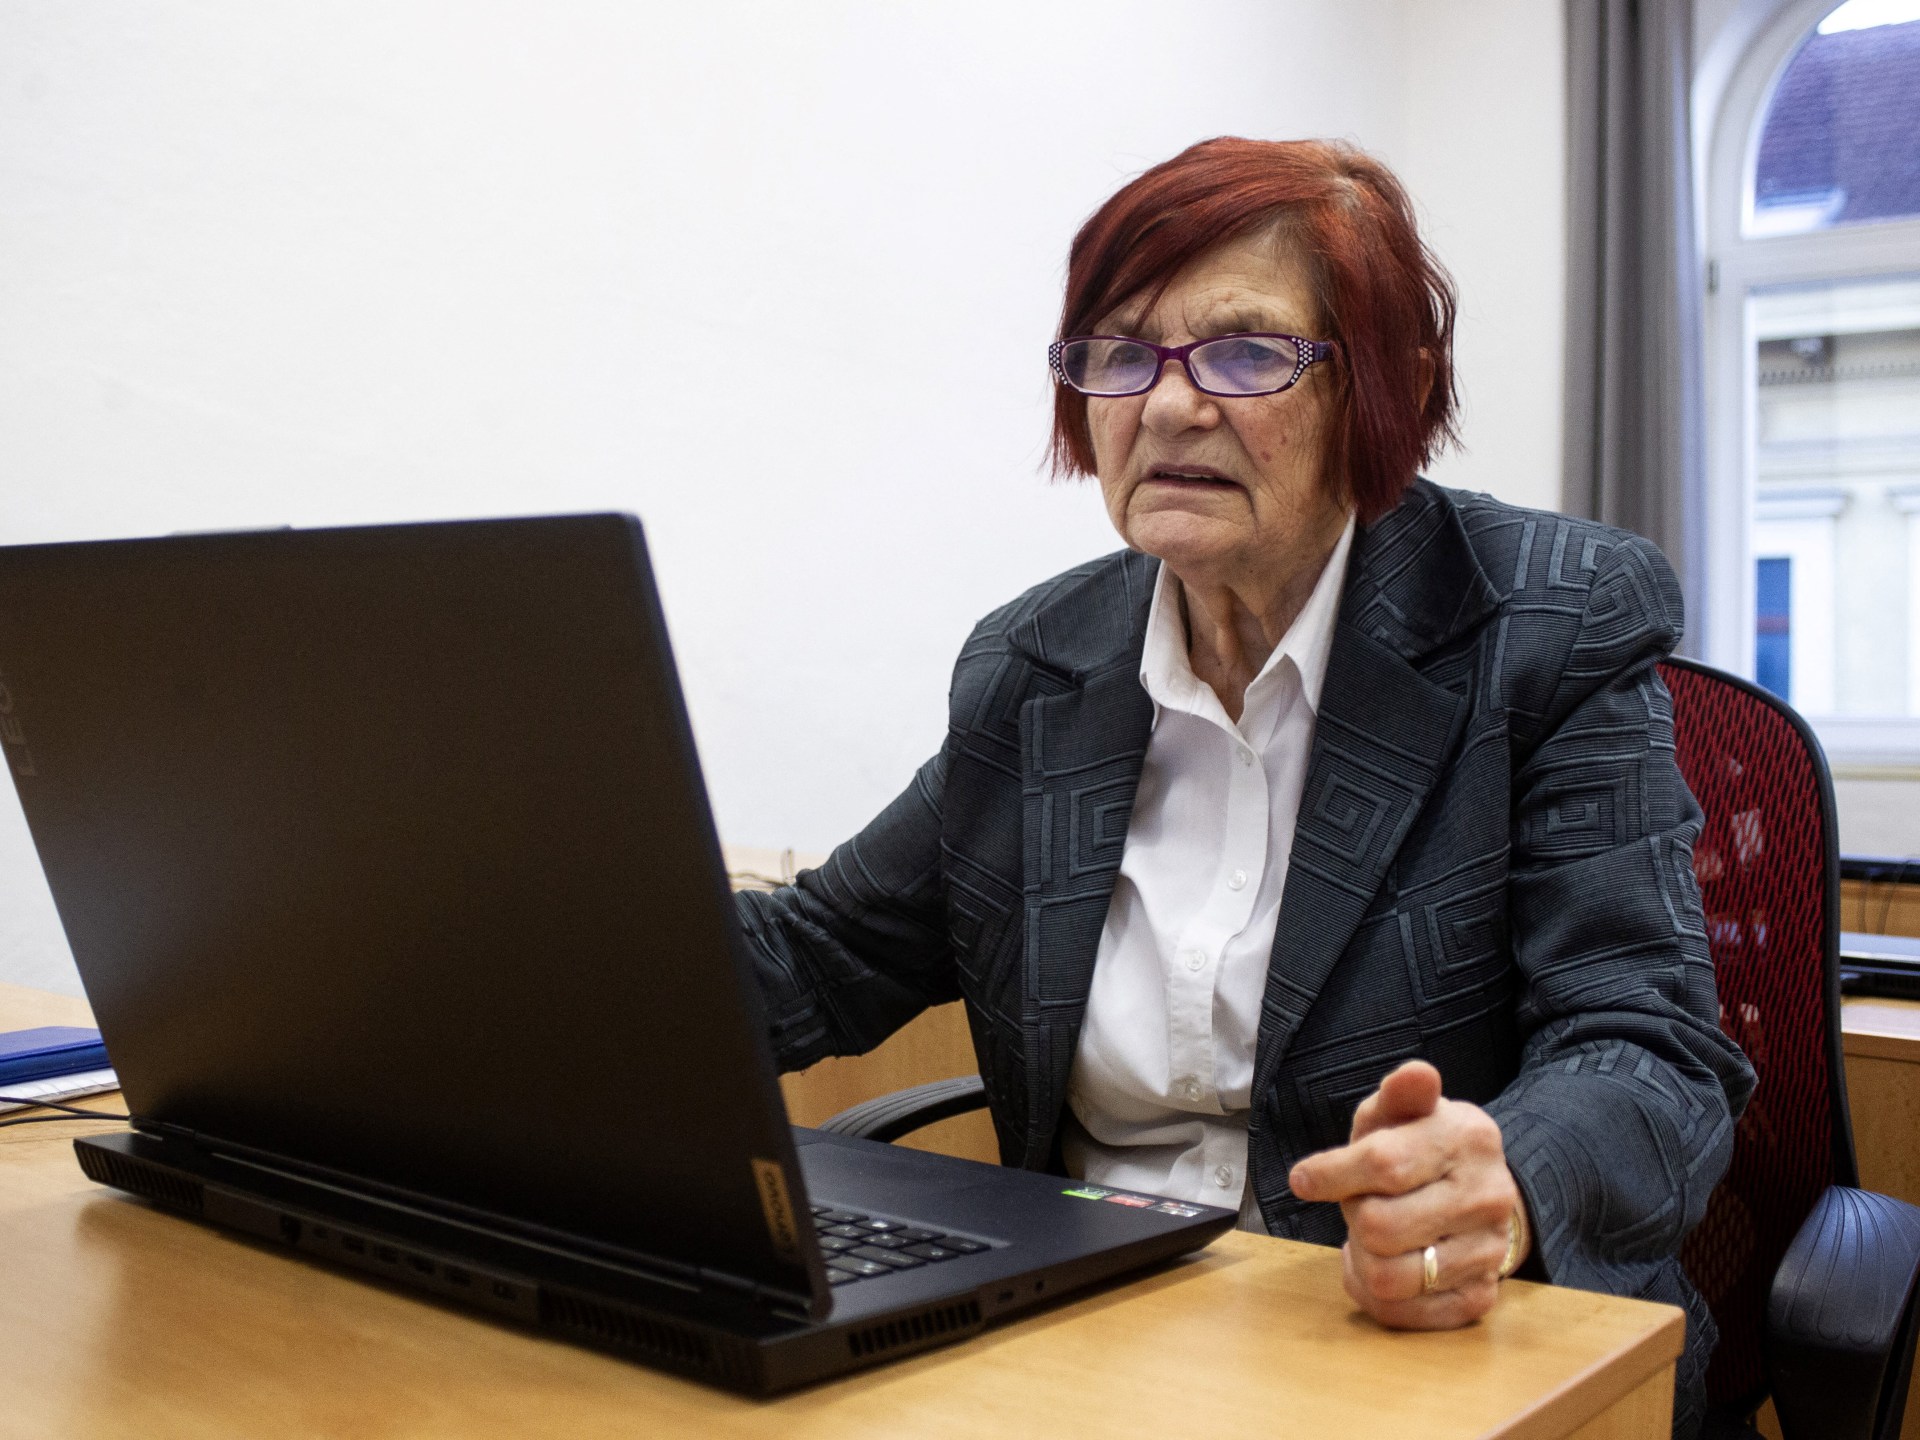 مسنّون تشيكيون يساهمون في “ويكيبيديا” لكسر الرتابة بالكتابة | ثقافة – البوكس نيوز